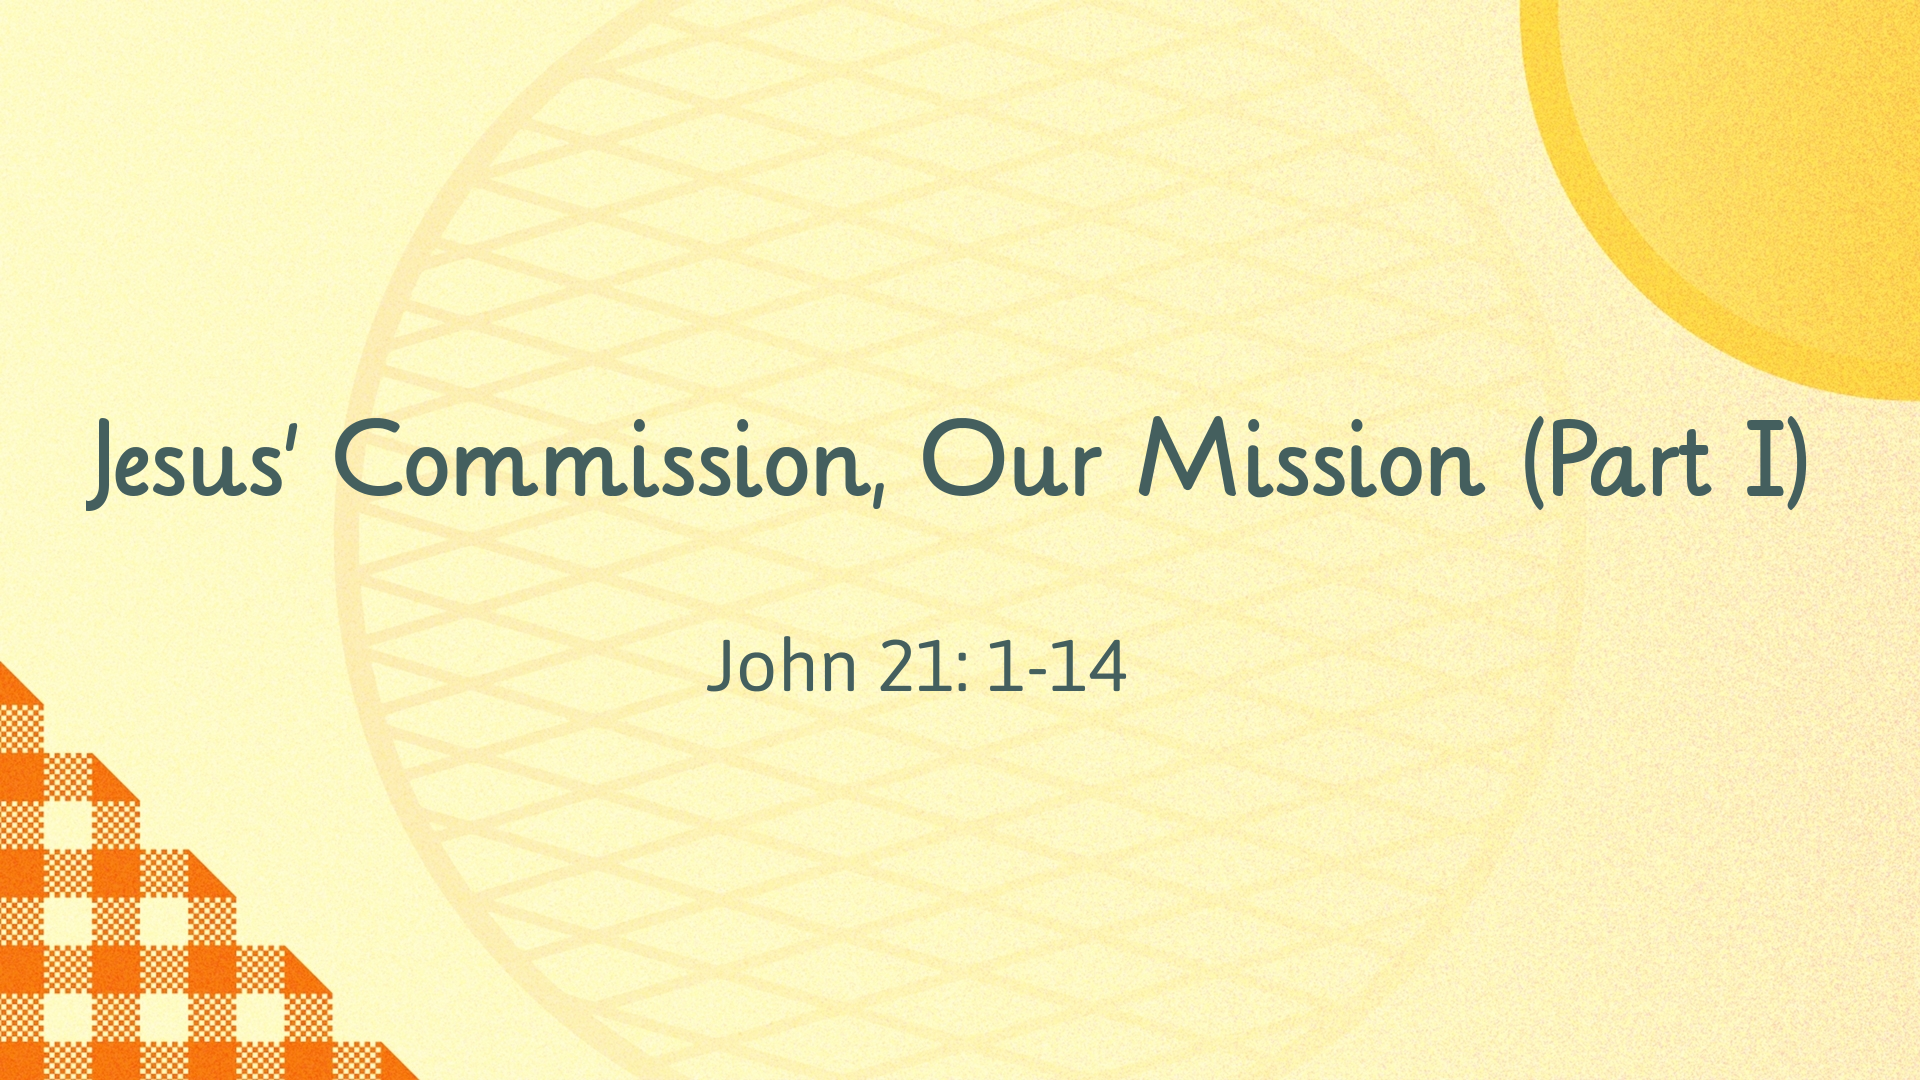 Feb 14, 2021 - Jesus' Commission, Our Mission (Part 1) (Video) - John 21: 1-14